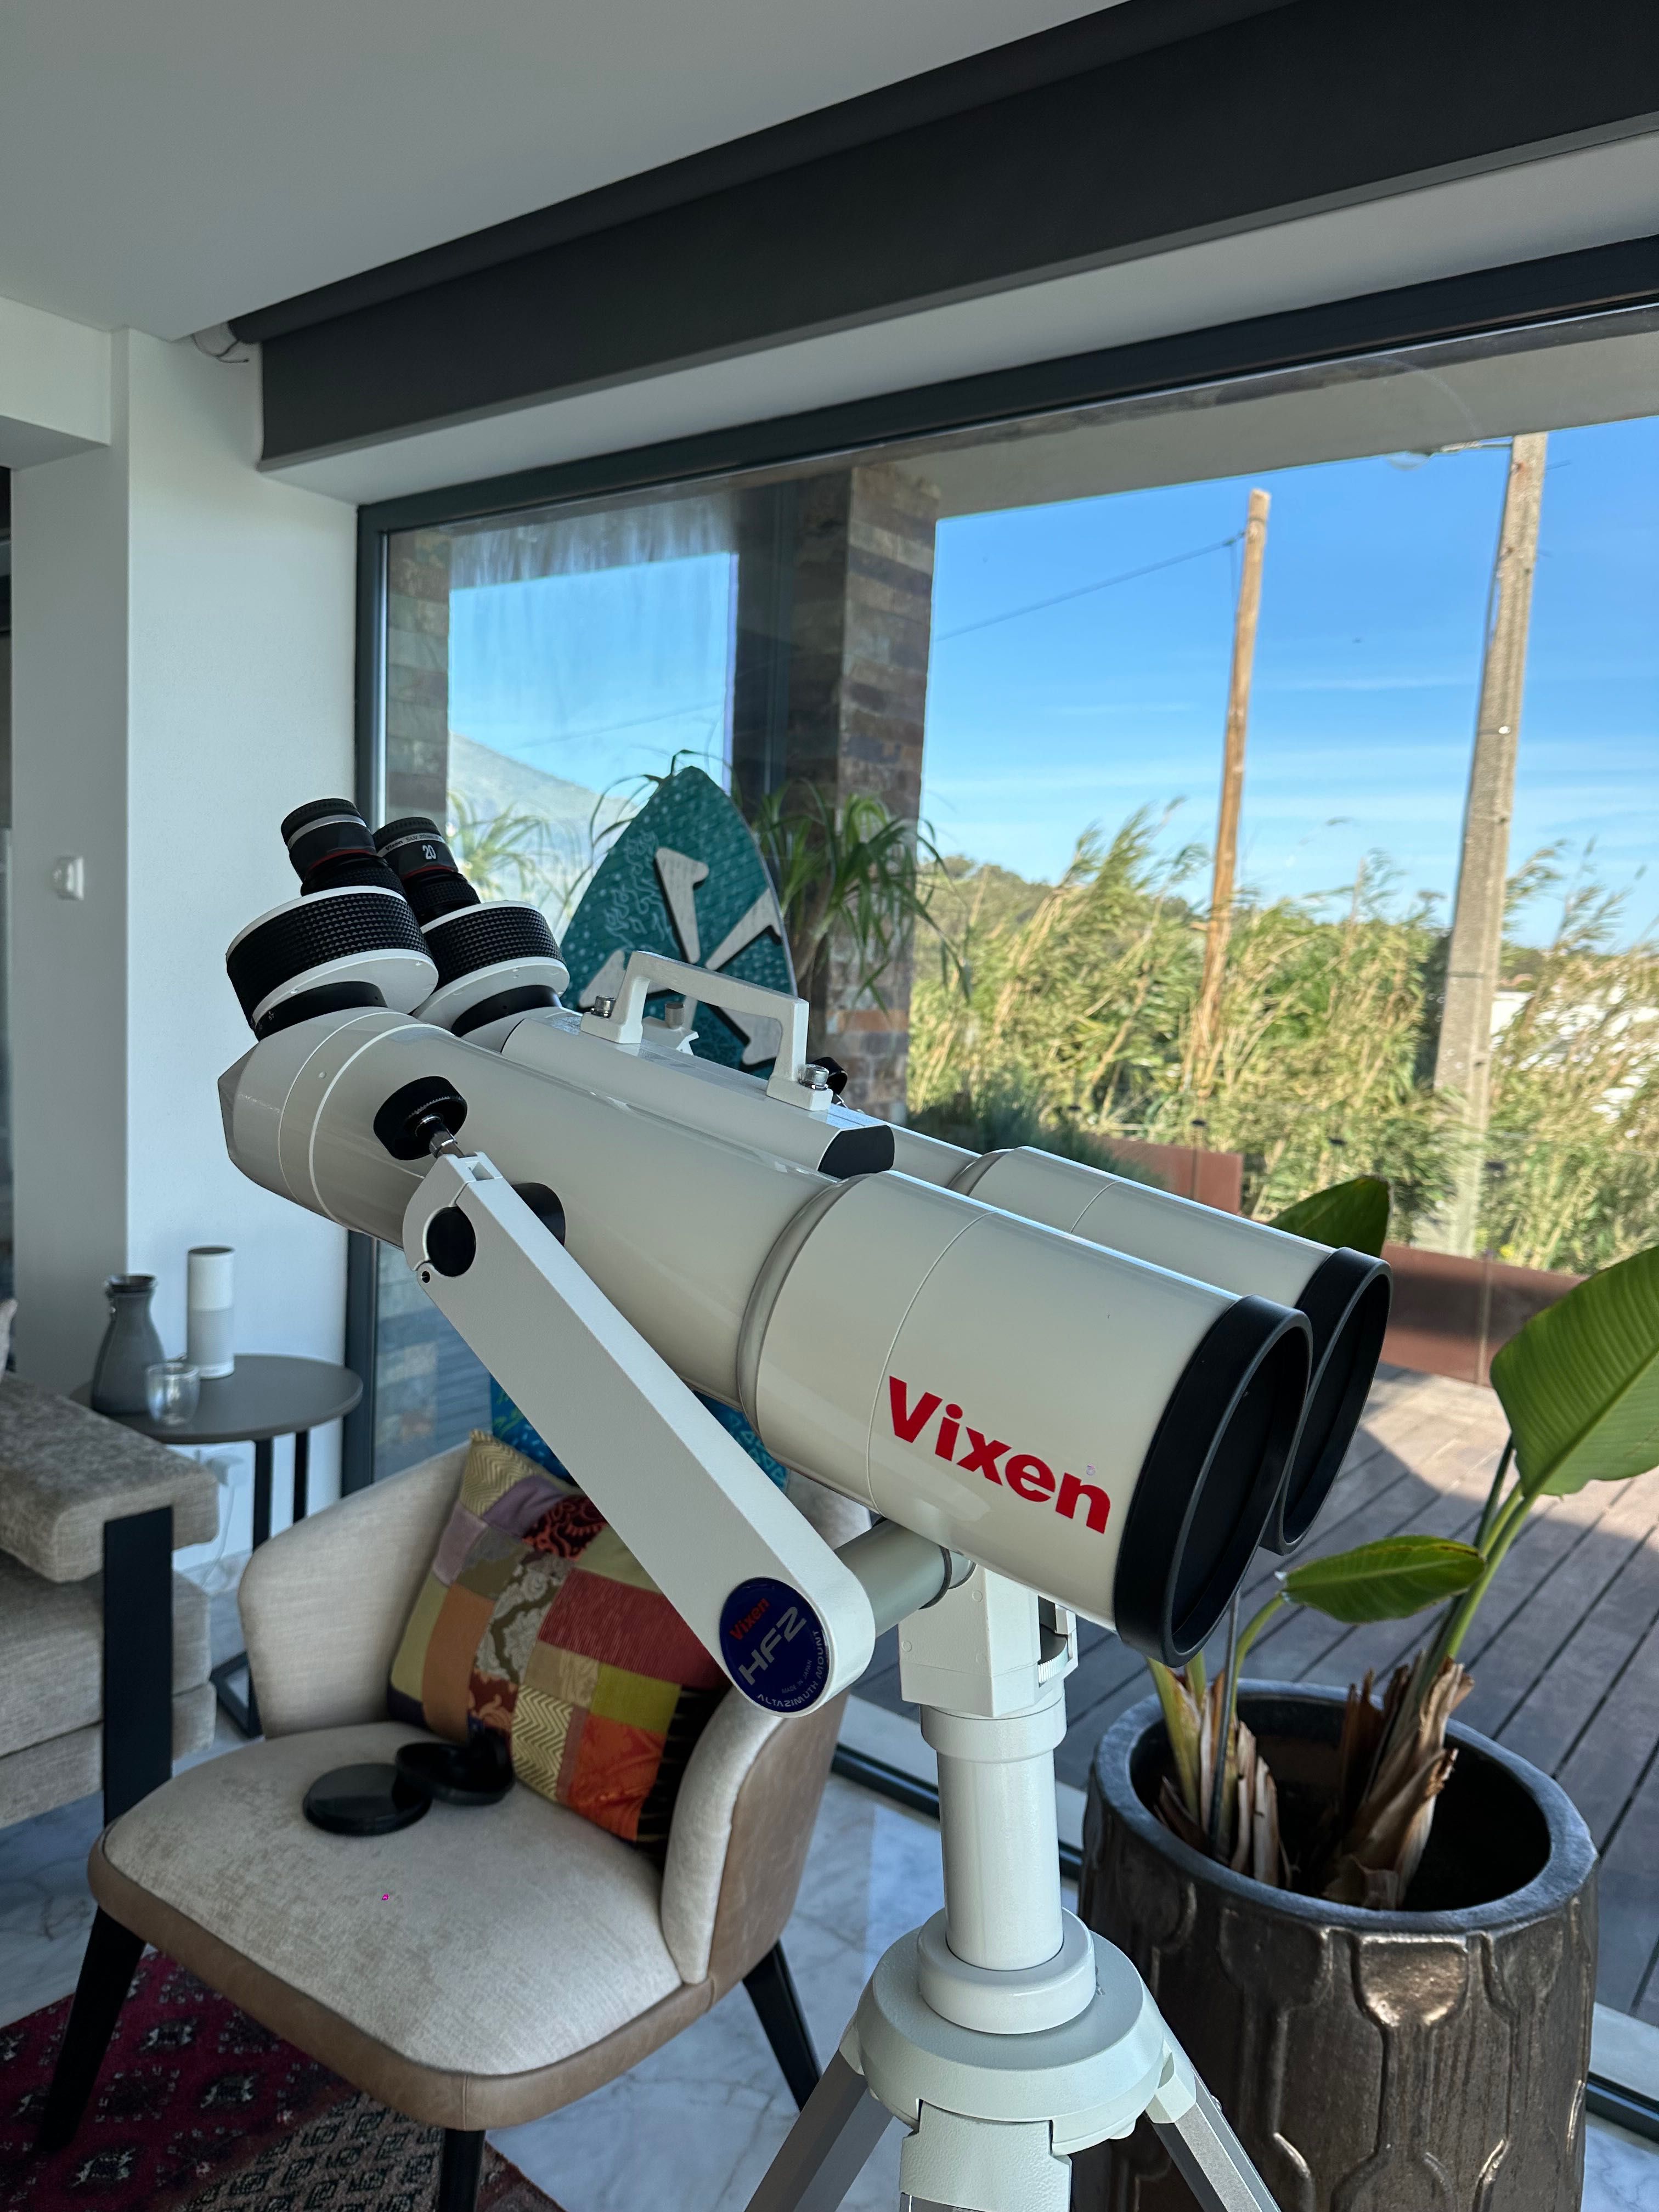 Vixen Bt126ss-a binocular telescopes